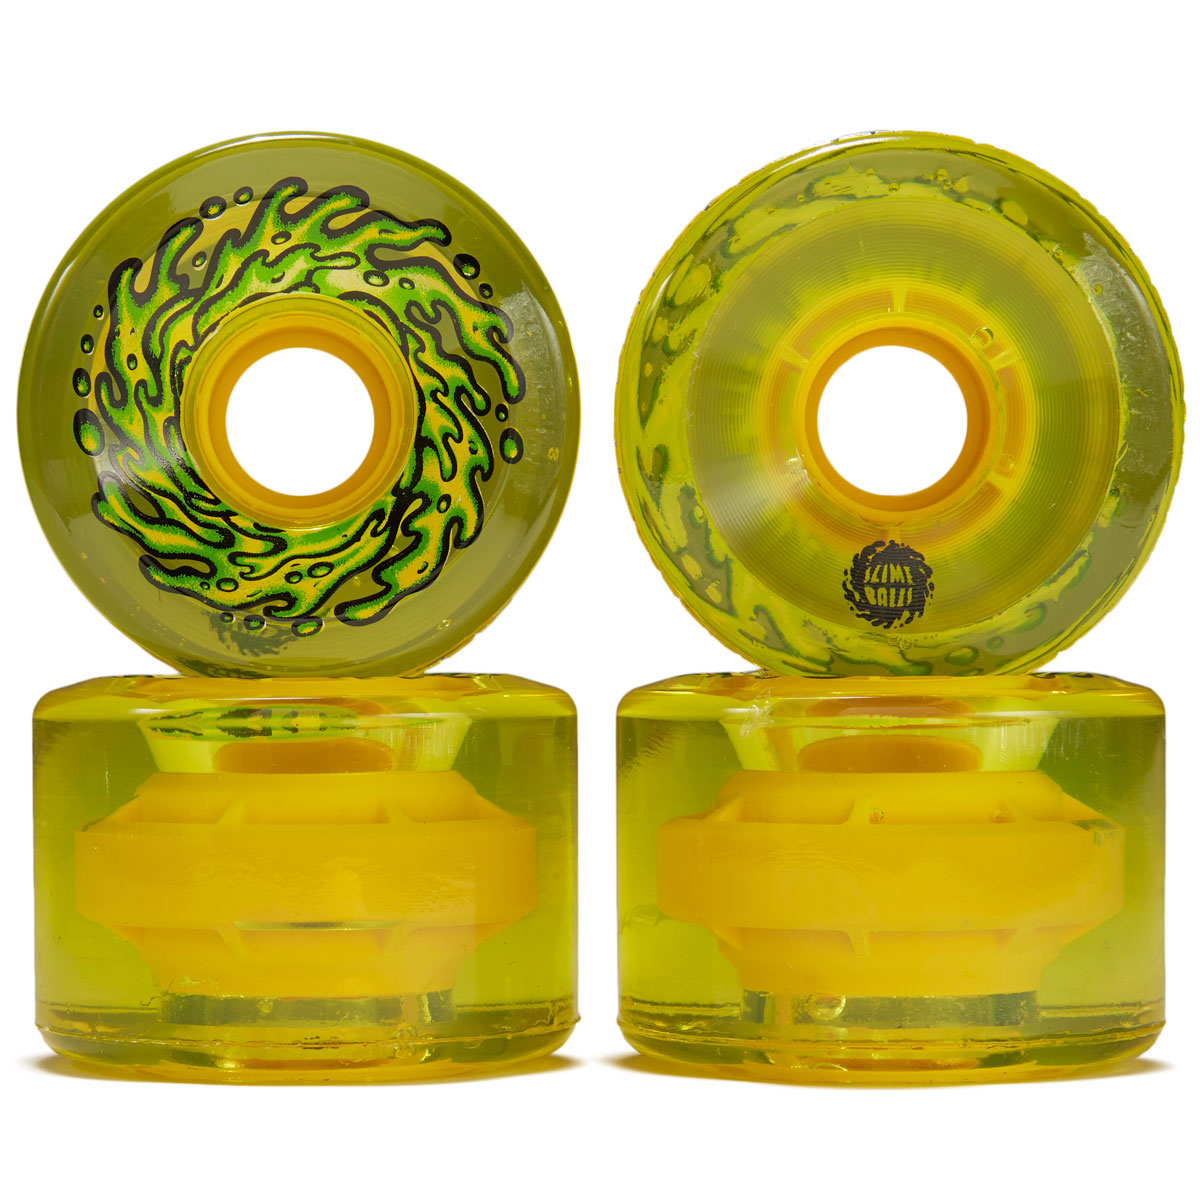 Slime Balls OG Slime 78a Skateboard Wheels - Trans Yellow - 66mm image 2